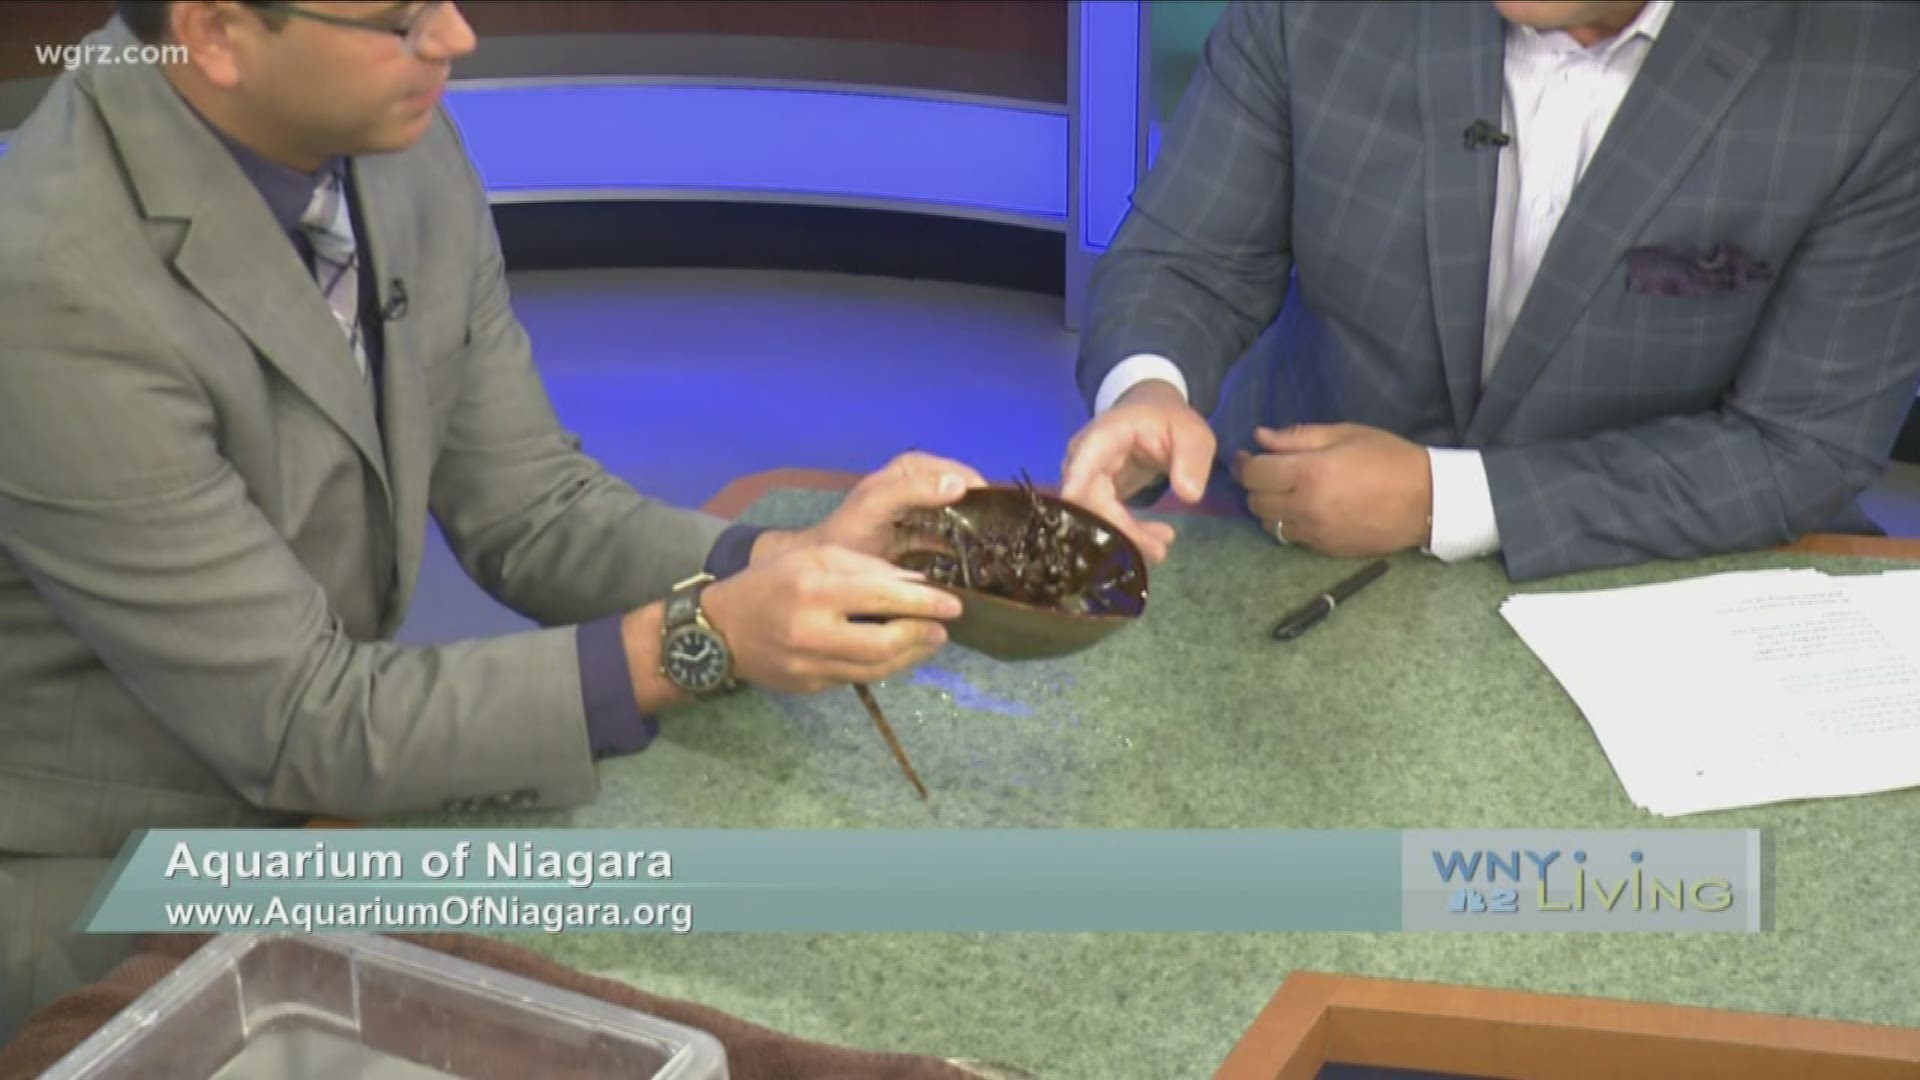 October 26 - Aquarium of Niagara (THIS VIDEO IS SPONSORED BY AQUARIUM OF NIAGARA)